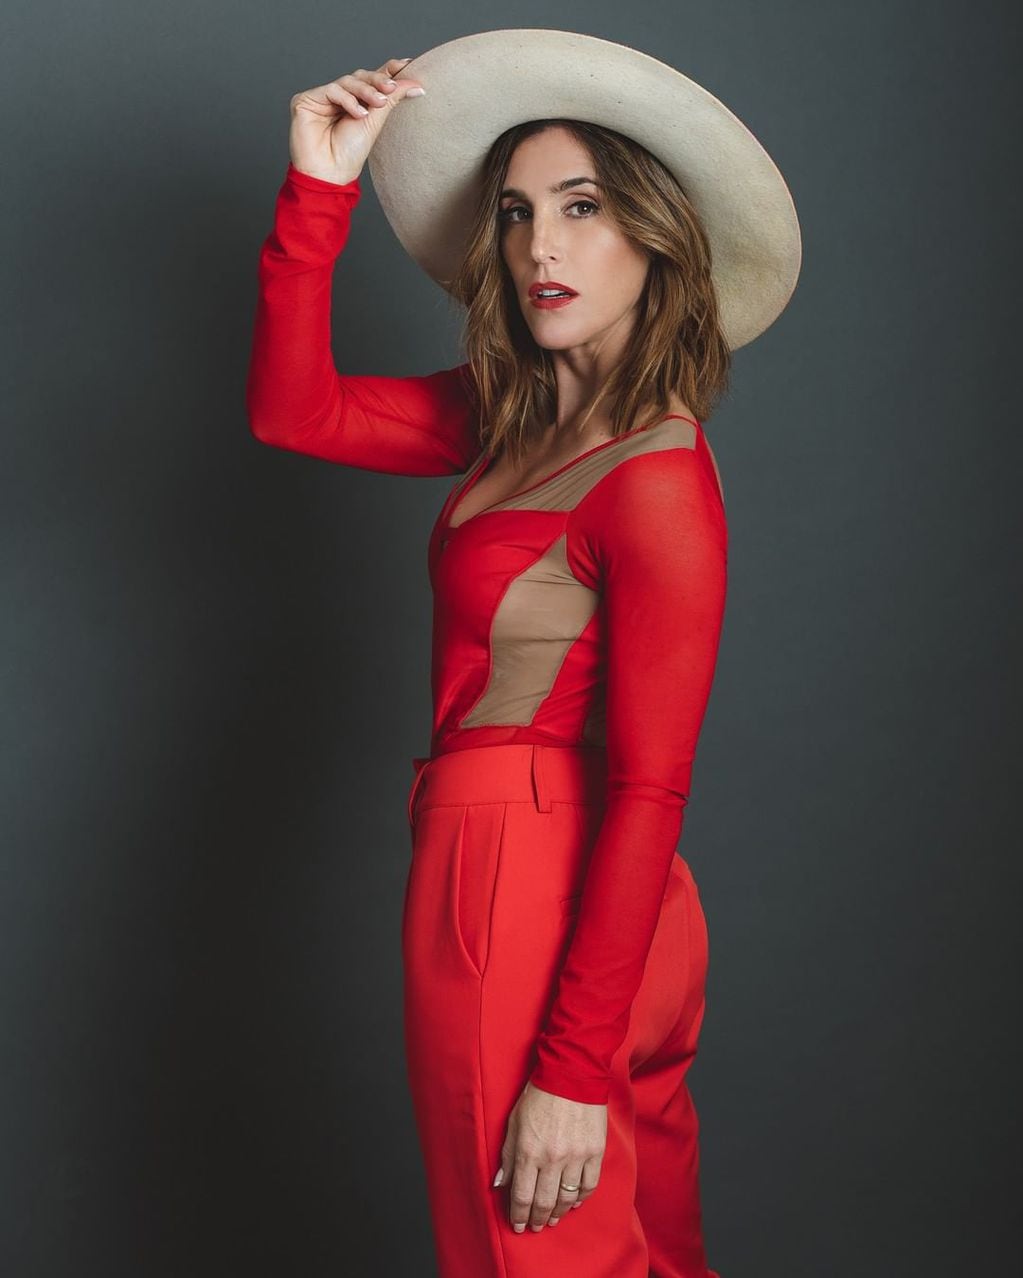 La cantante actualizó sus redes con un outfit en rojos.